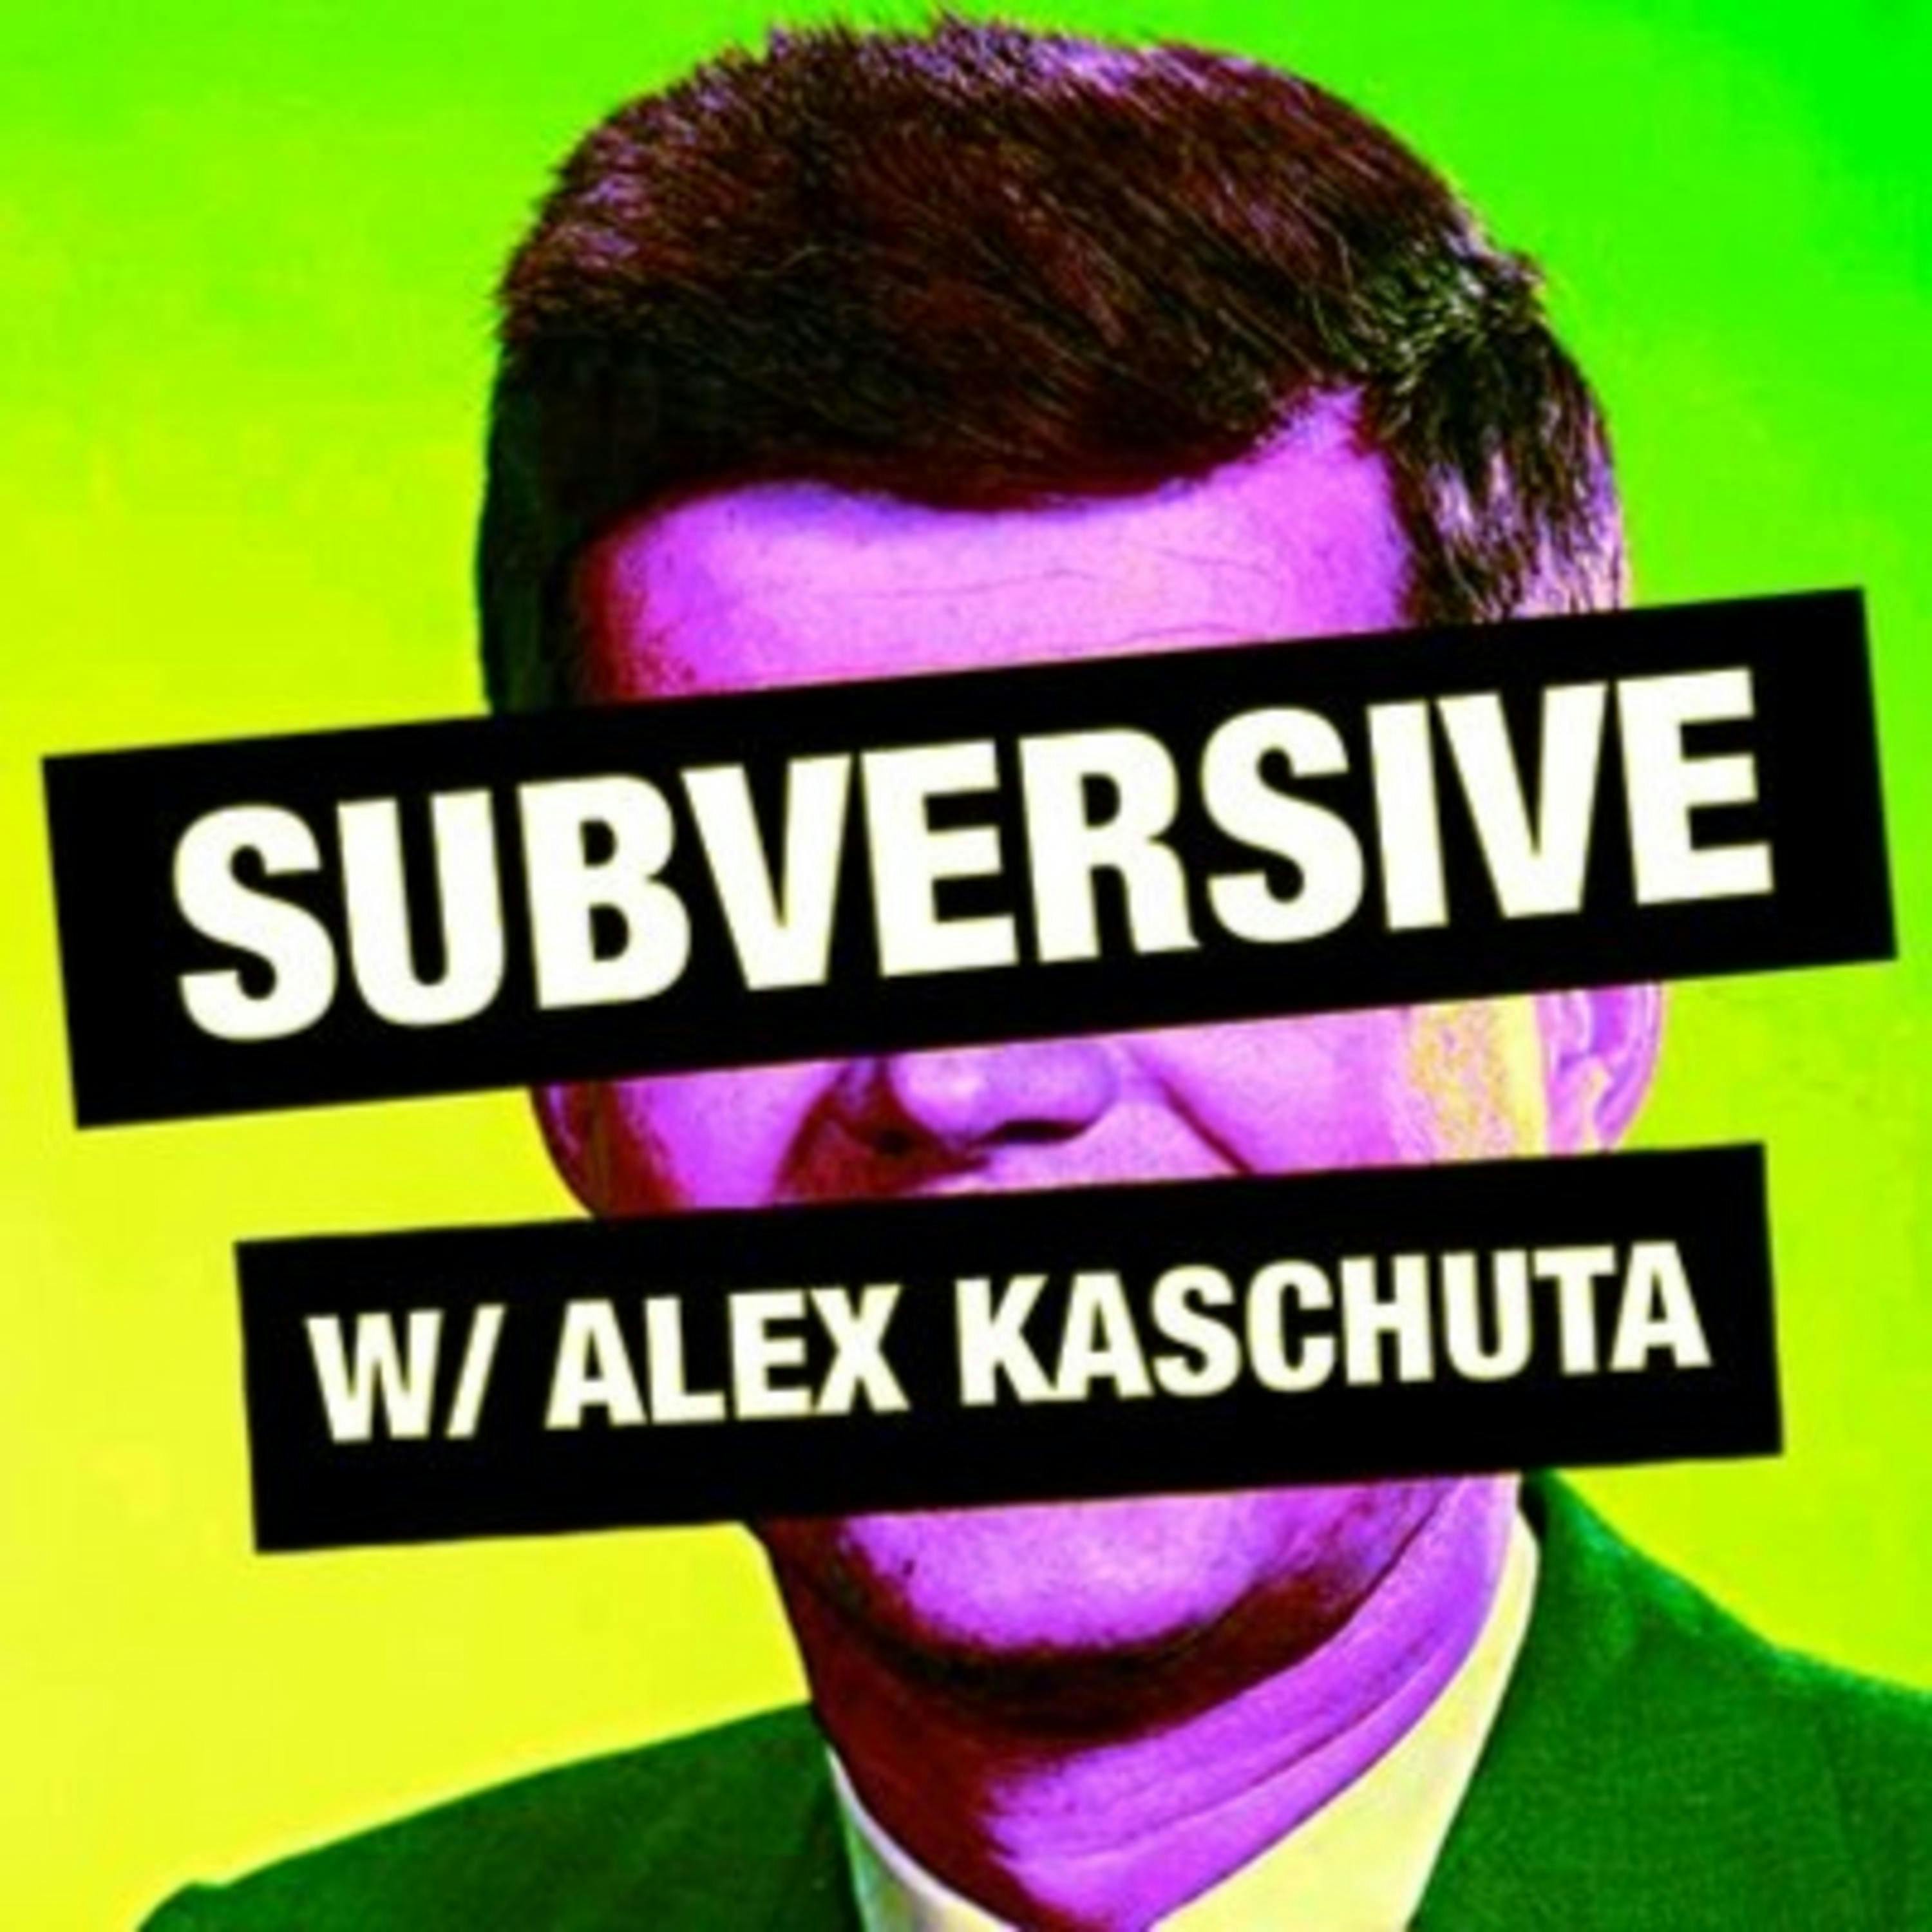 Subversive w/ Alex Kaschuta